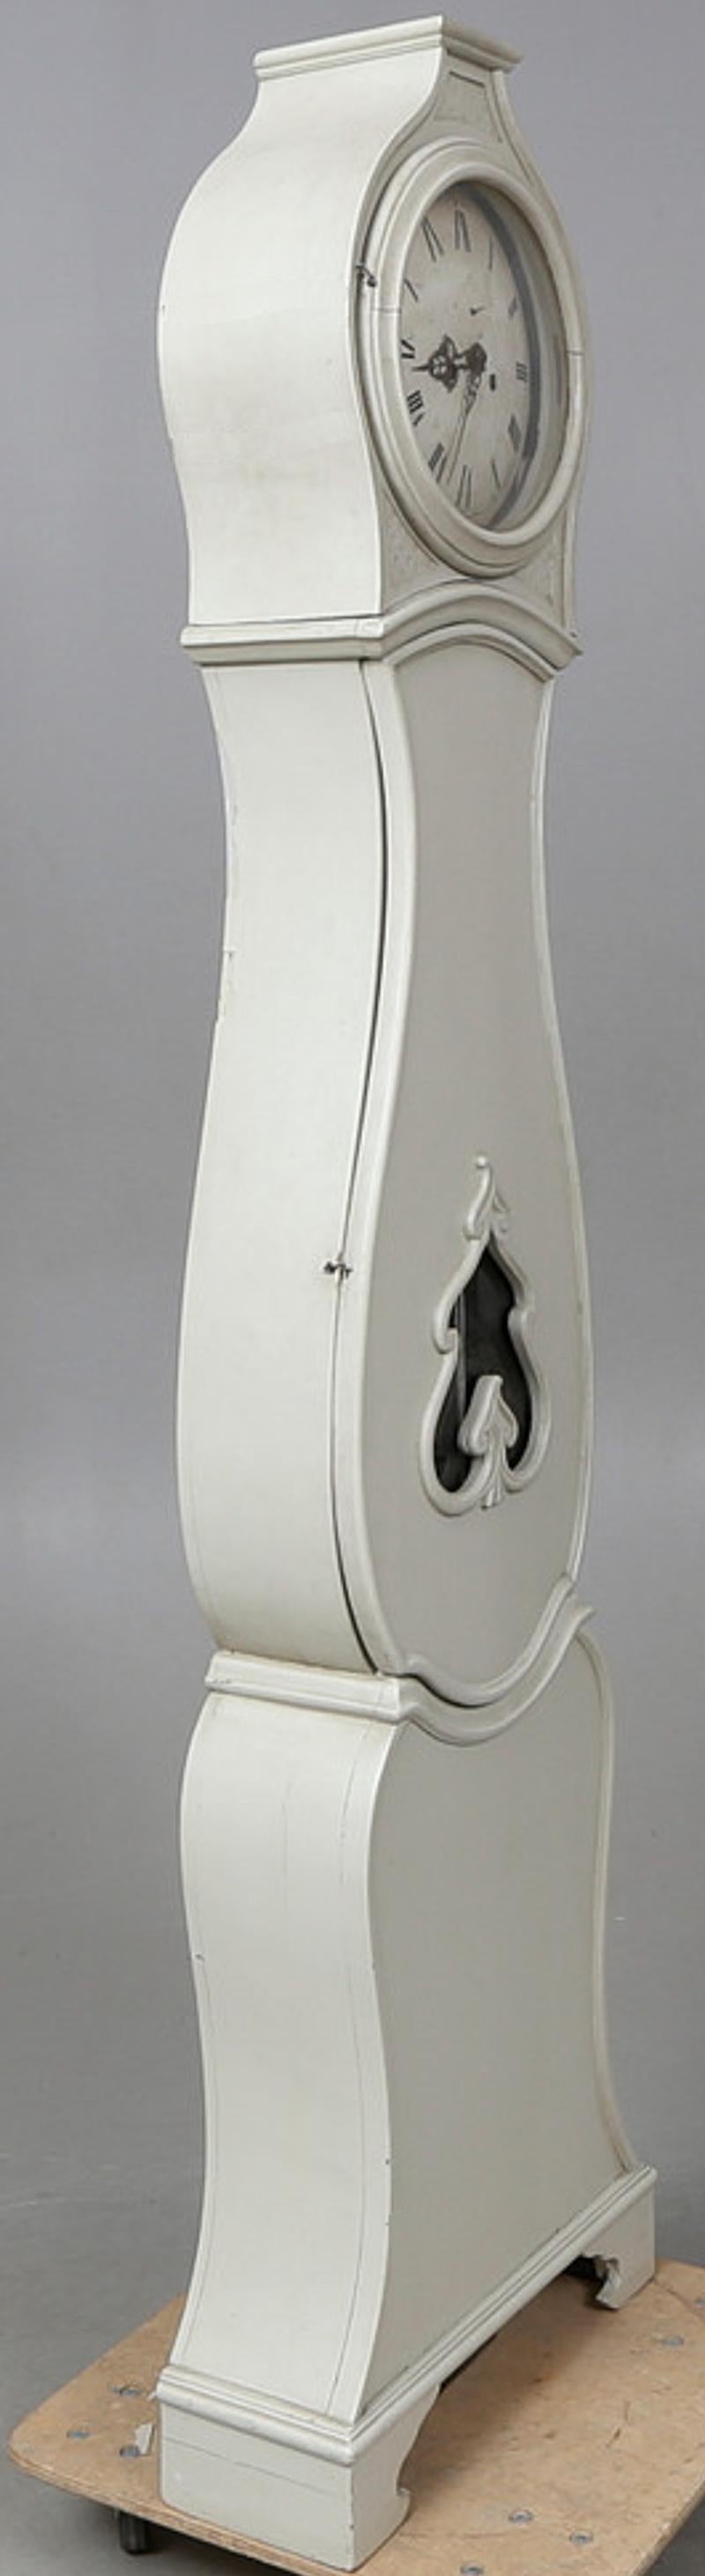 Horloge mora suédoise ancienne du début des années 1800 avec une belle finition gris blanc et une fenêtre de pendule unique en forme de feuille avec un corps allongé en forme de ventre, une couronne et des détails simples et un cadran de chiffres